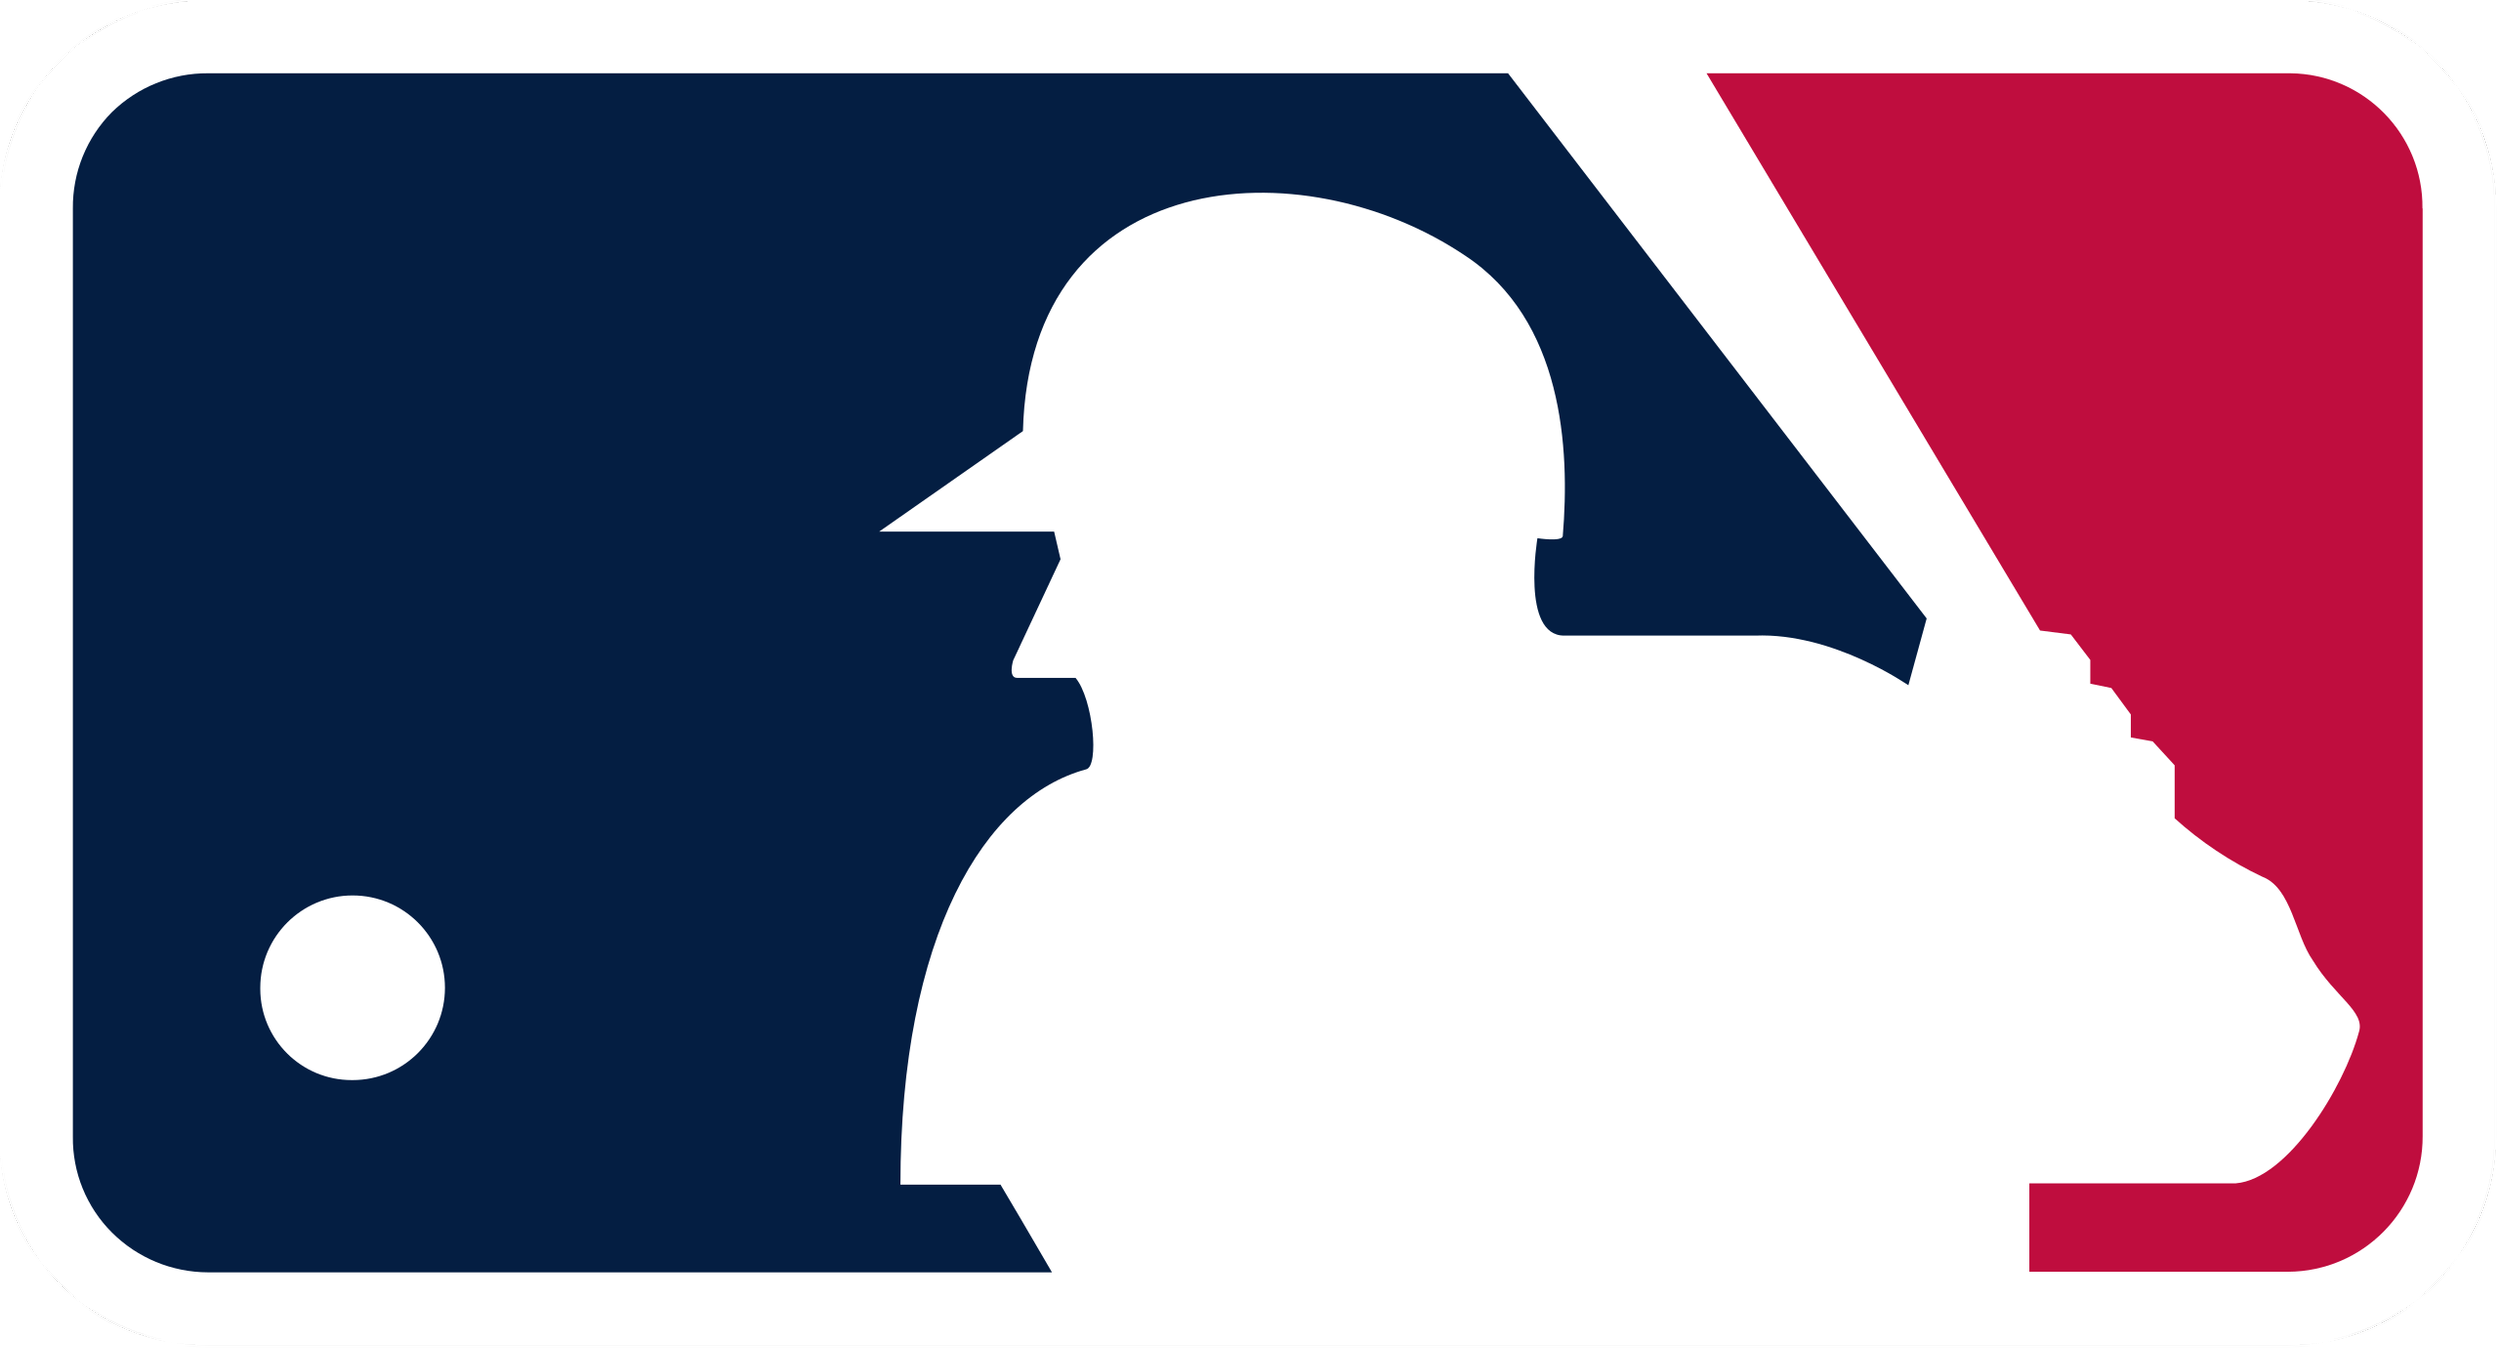 Major_League_Baseball_logo.svg.png